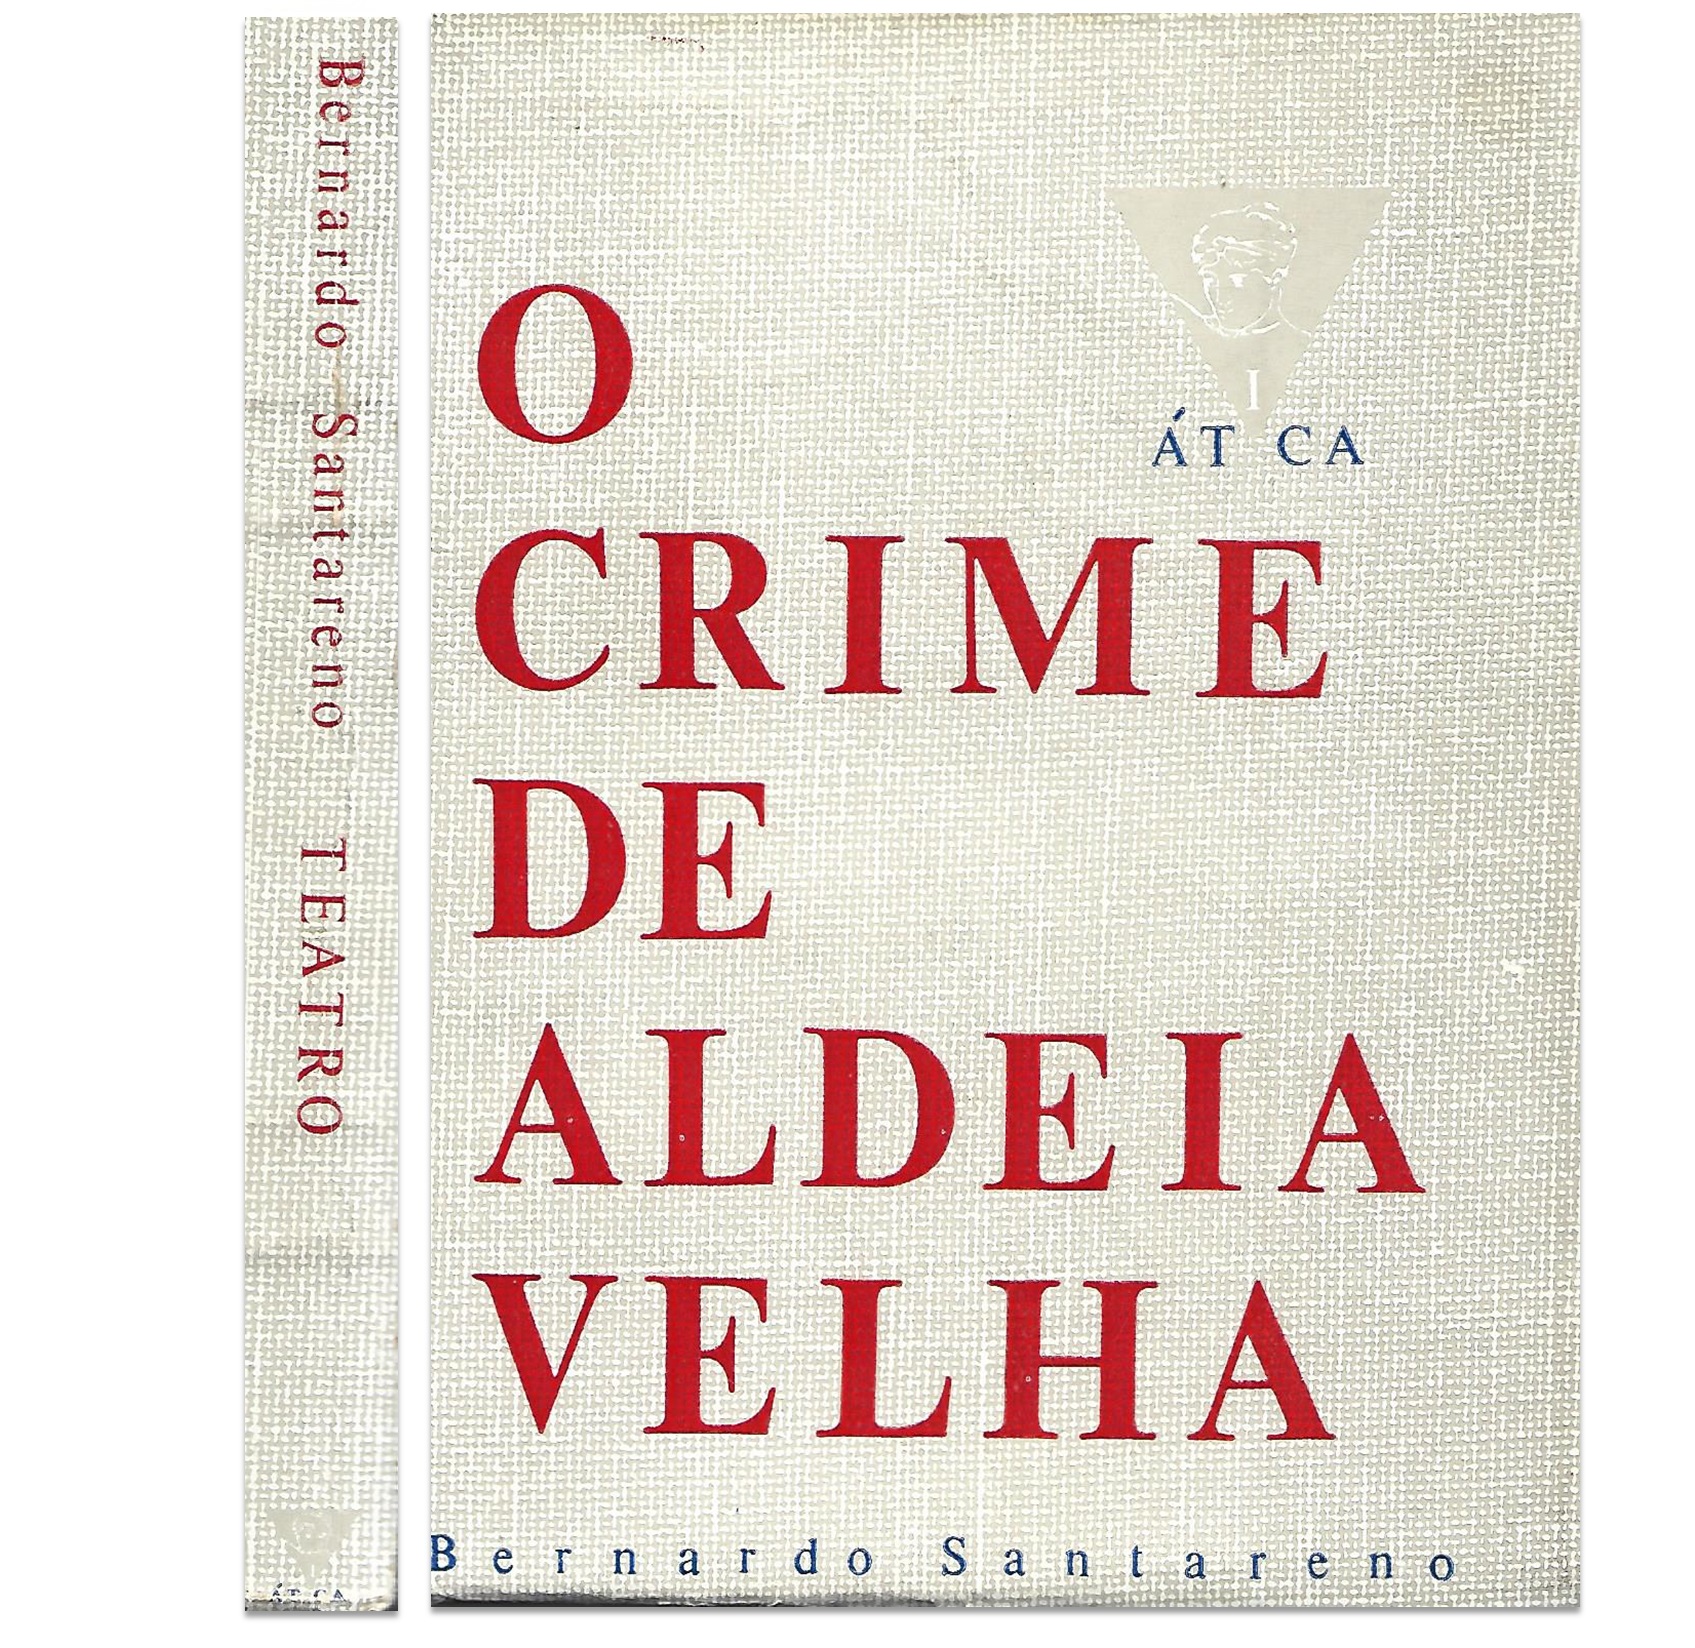 O CRIME DE ALDEIA VELHA